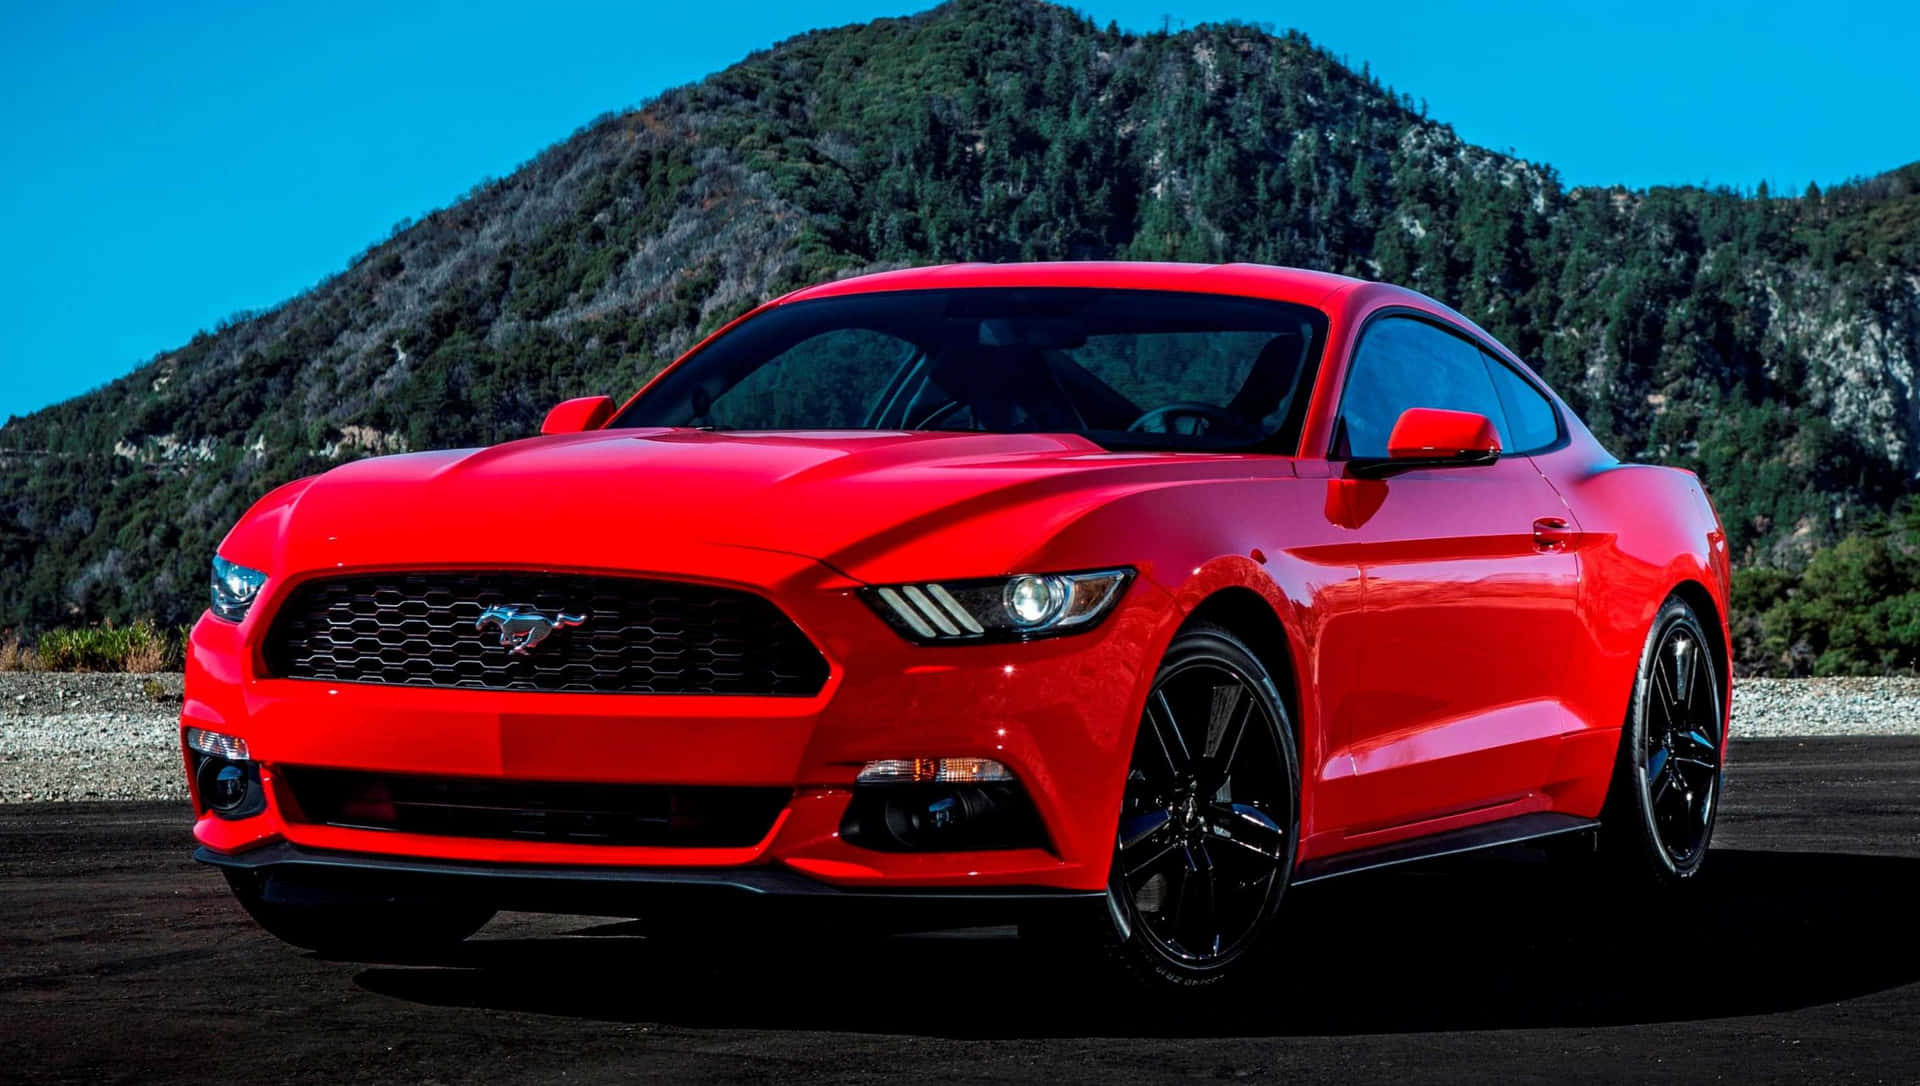 Den røde Ford Mustang er parkeret foran bjerge.